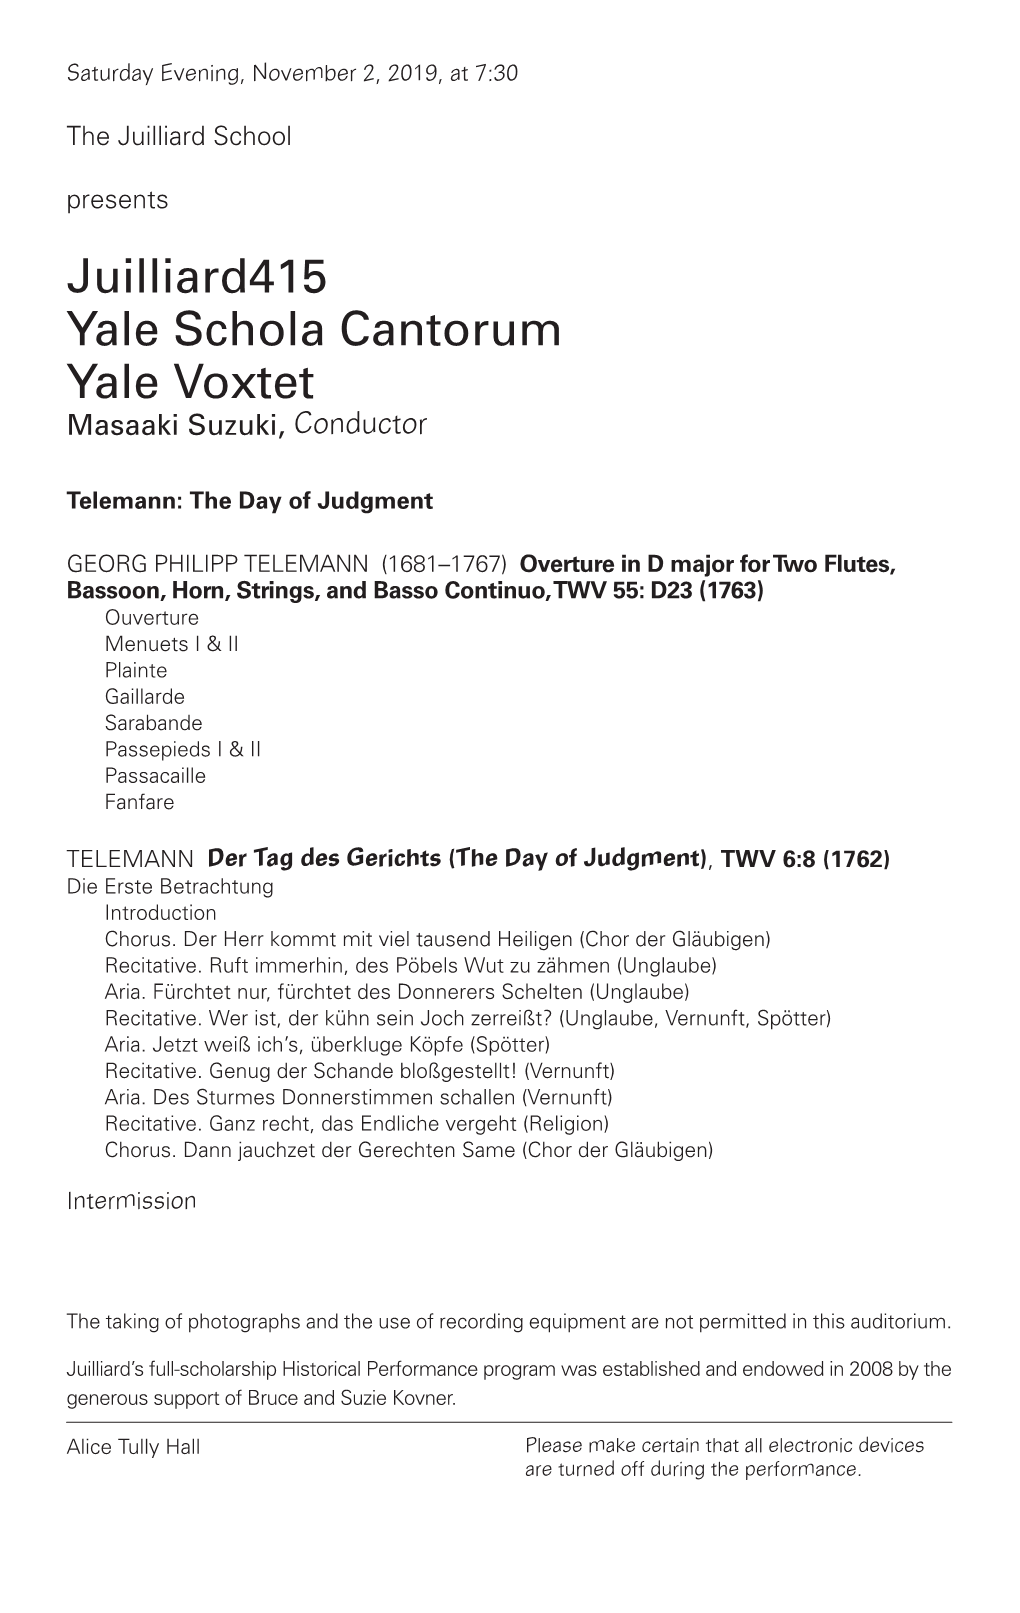 Juilliard415 Yale Schola Cantorum Yale Voxtet Masaaki Suzuki, Conductor